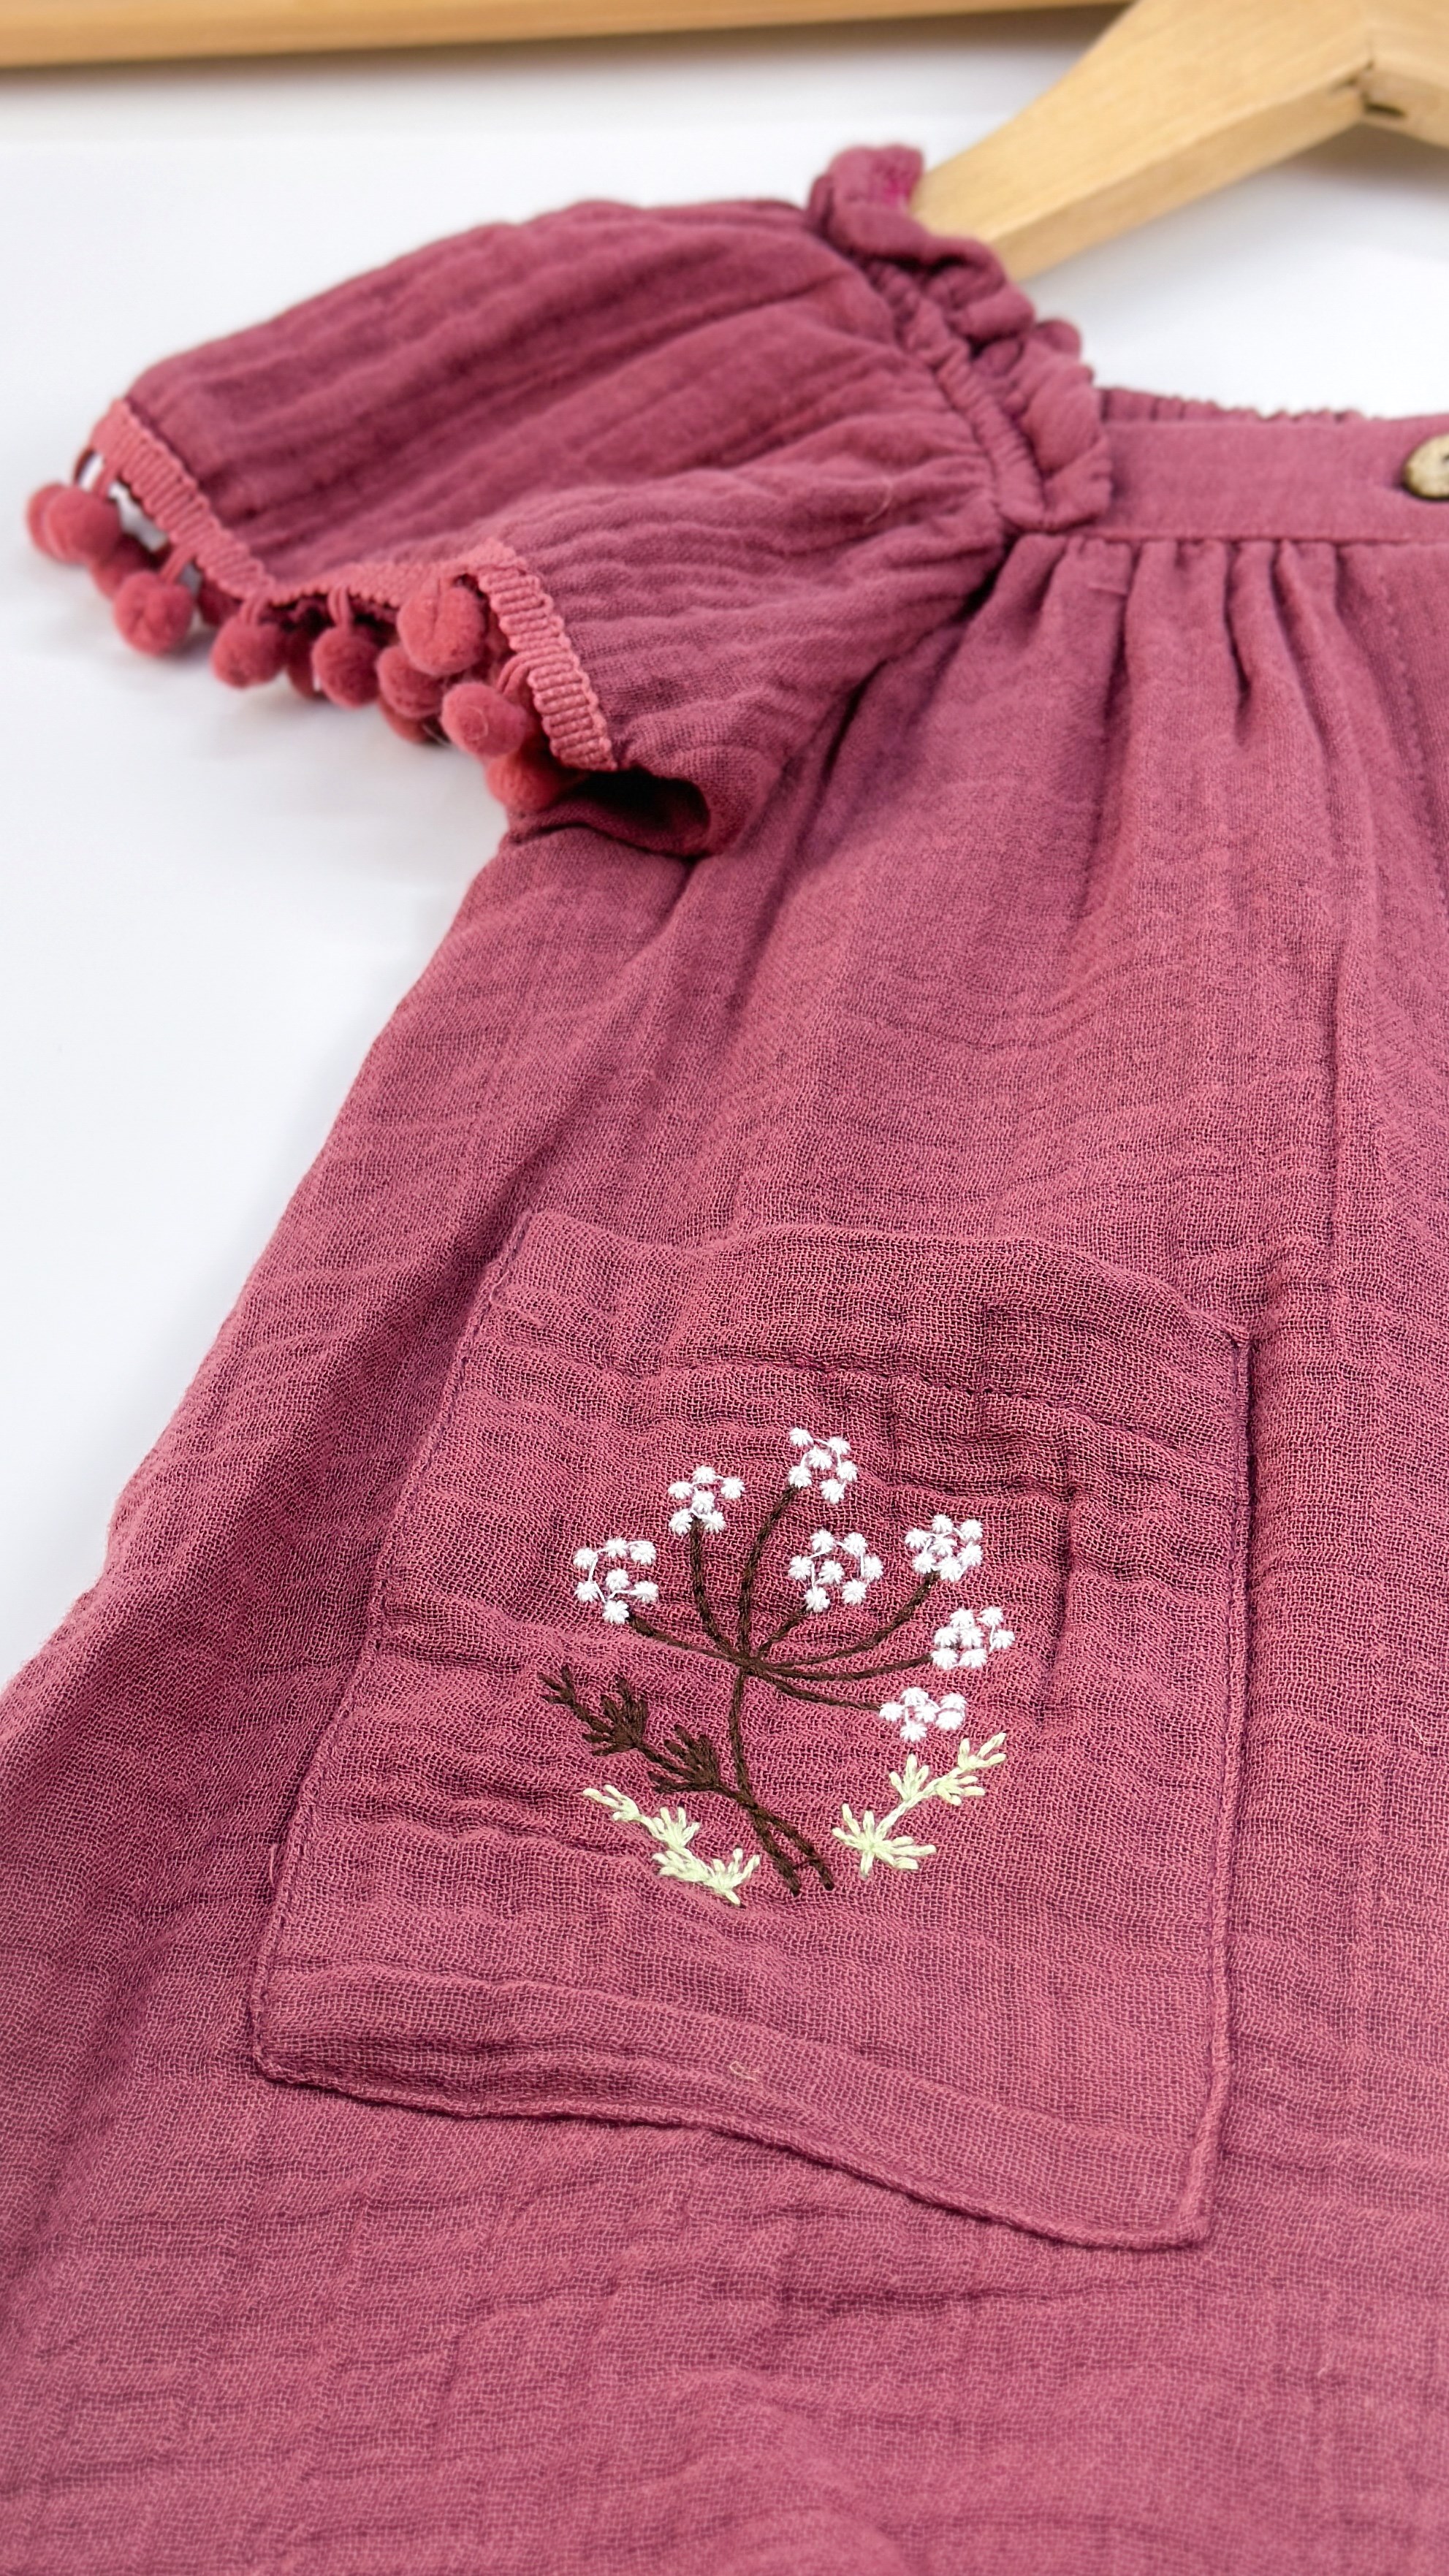 Ponpon detaylı hasır çantalı muslin yazlık elbise 